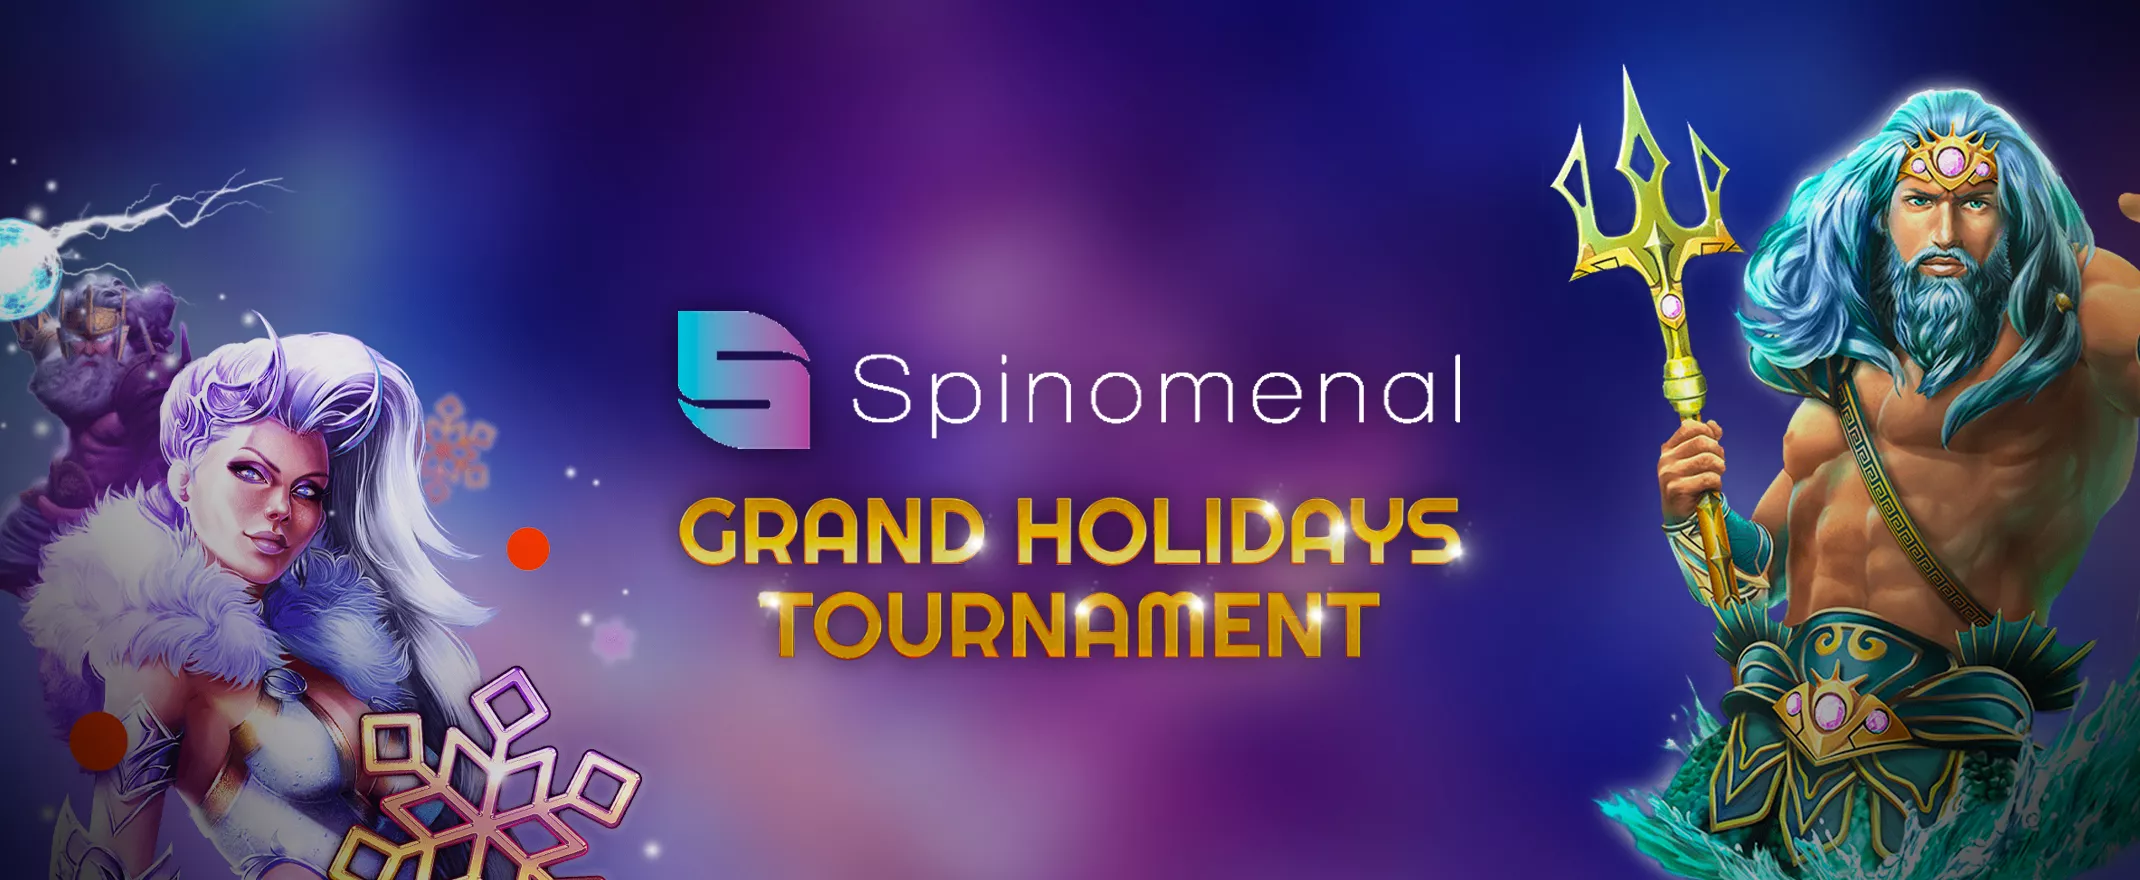 Grand Holidays Tournament